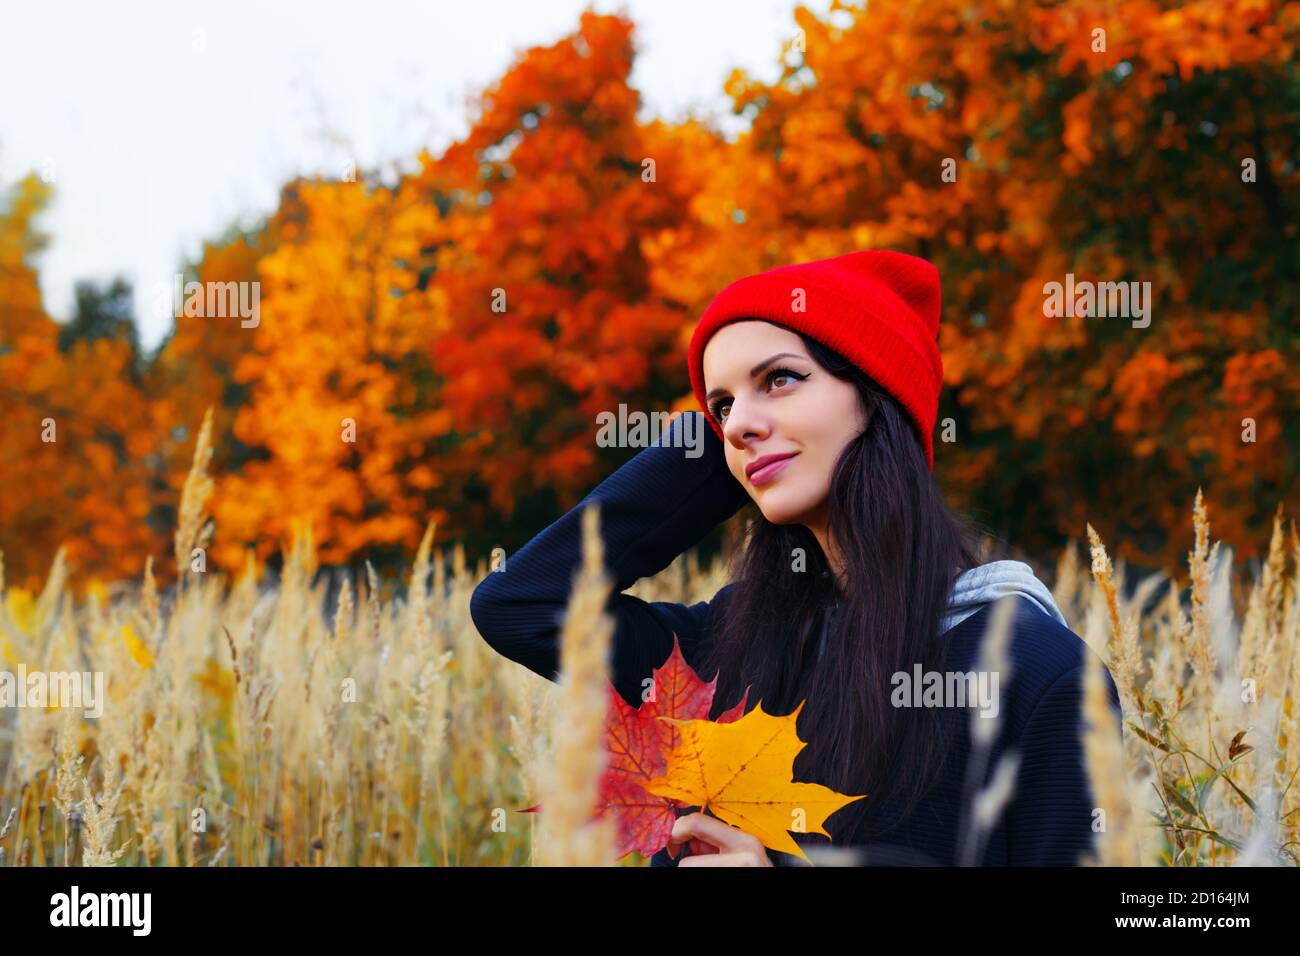 Brunnette kaukasische Frau in rotem Hut hält Ahornblätter und lächelt. Herbstporträt im Freien Stockfoto